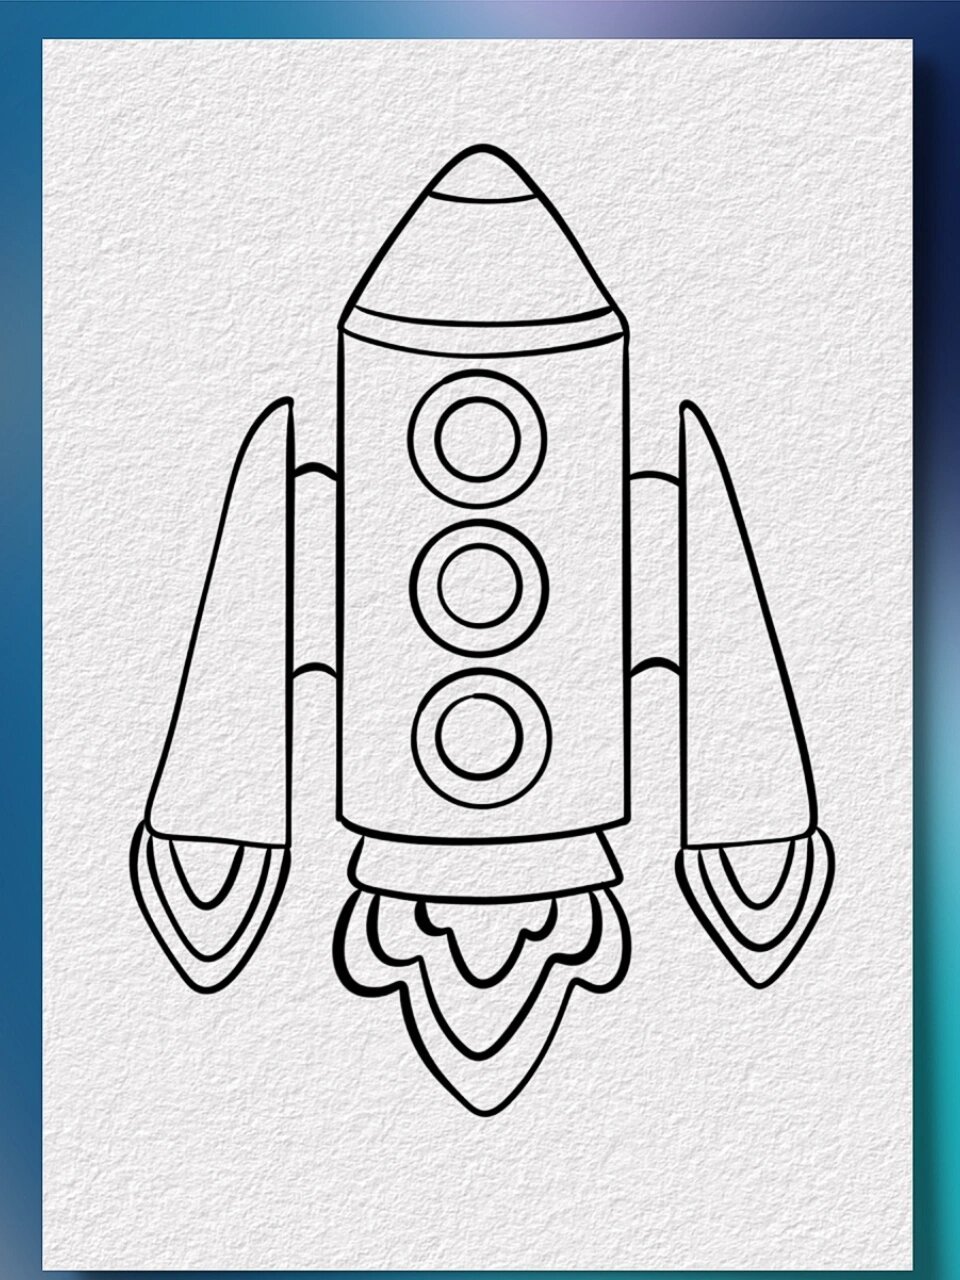 火箭的画法简笔图片